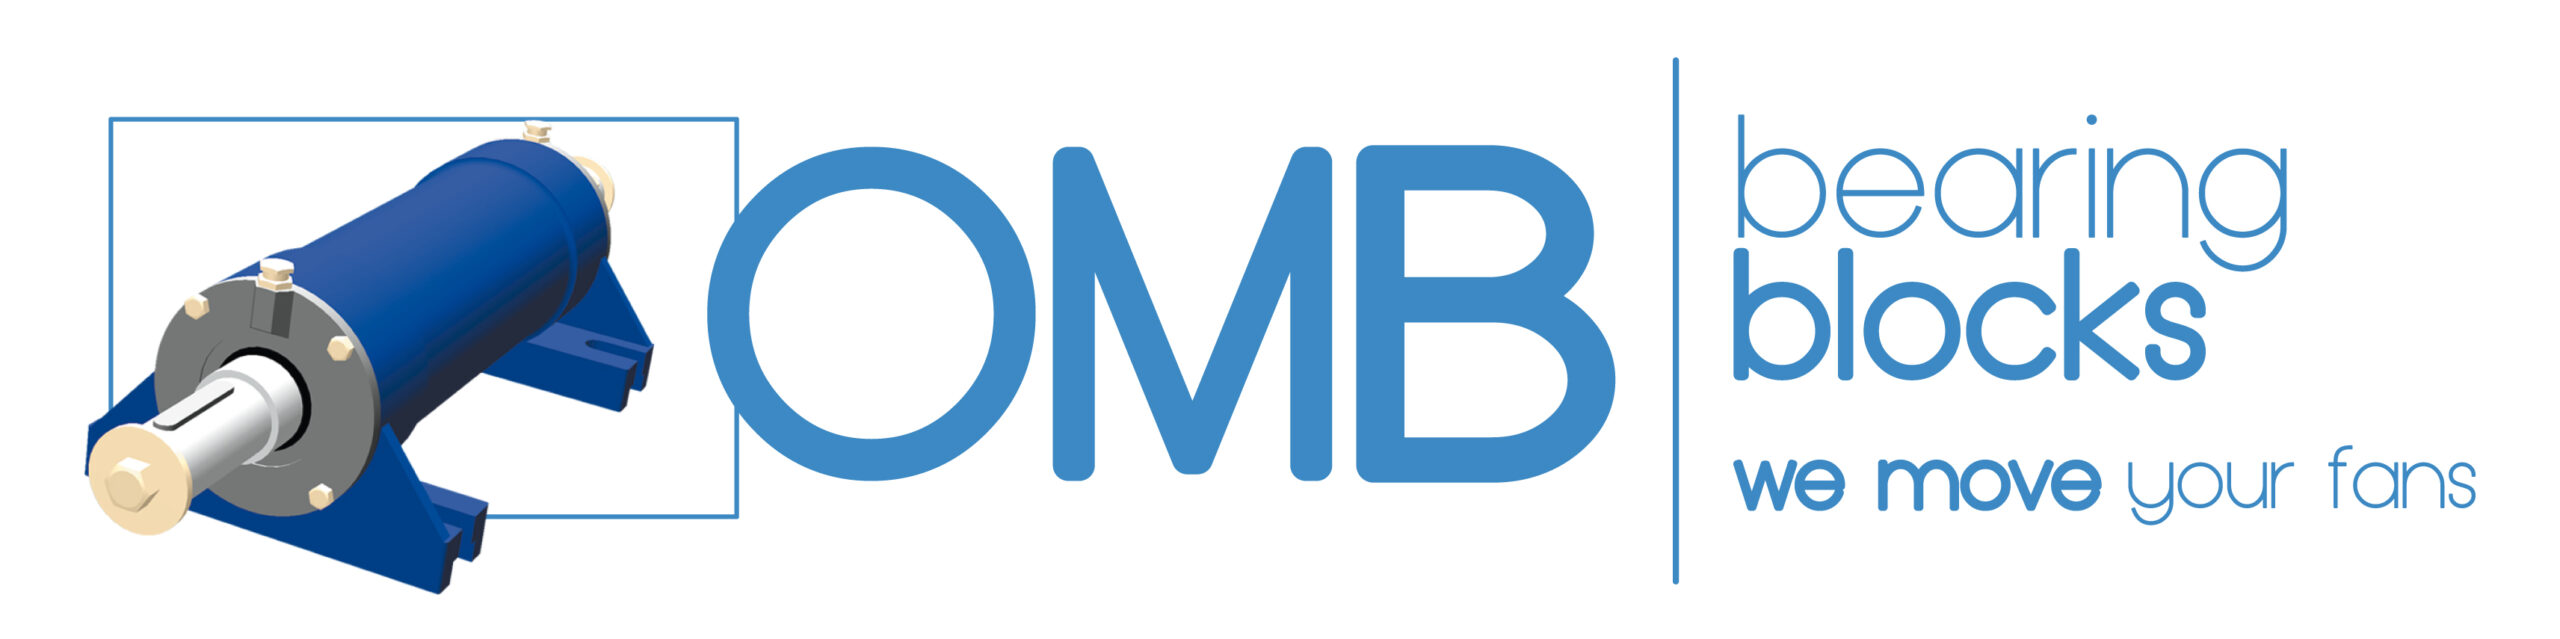 OMB supporti monoblocco